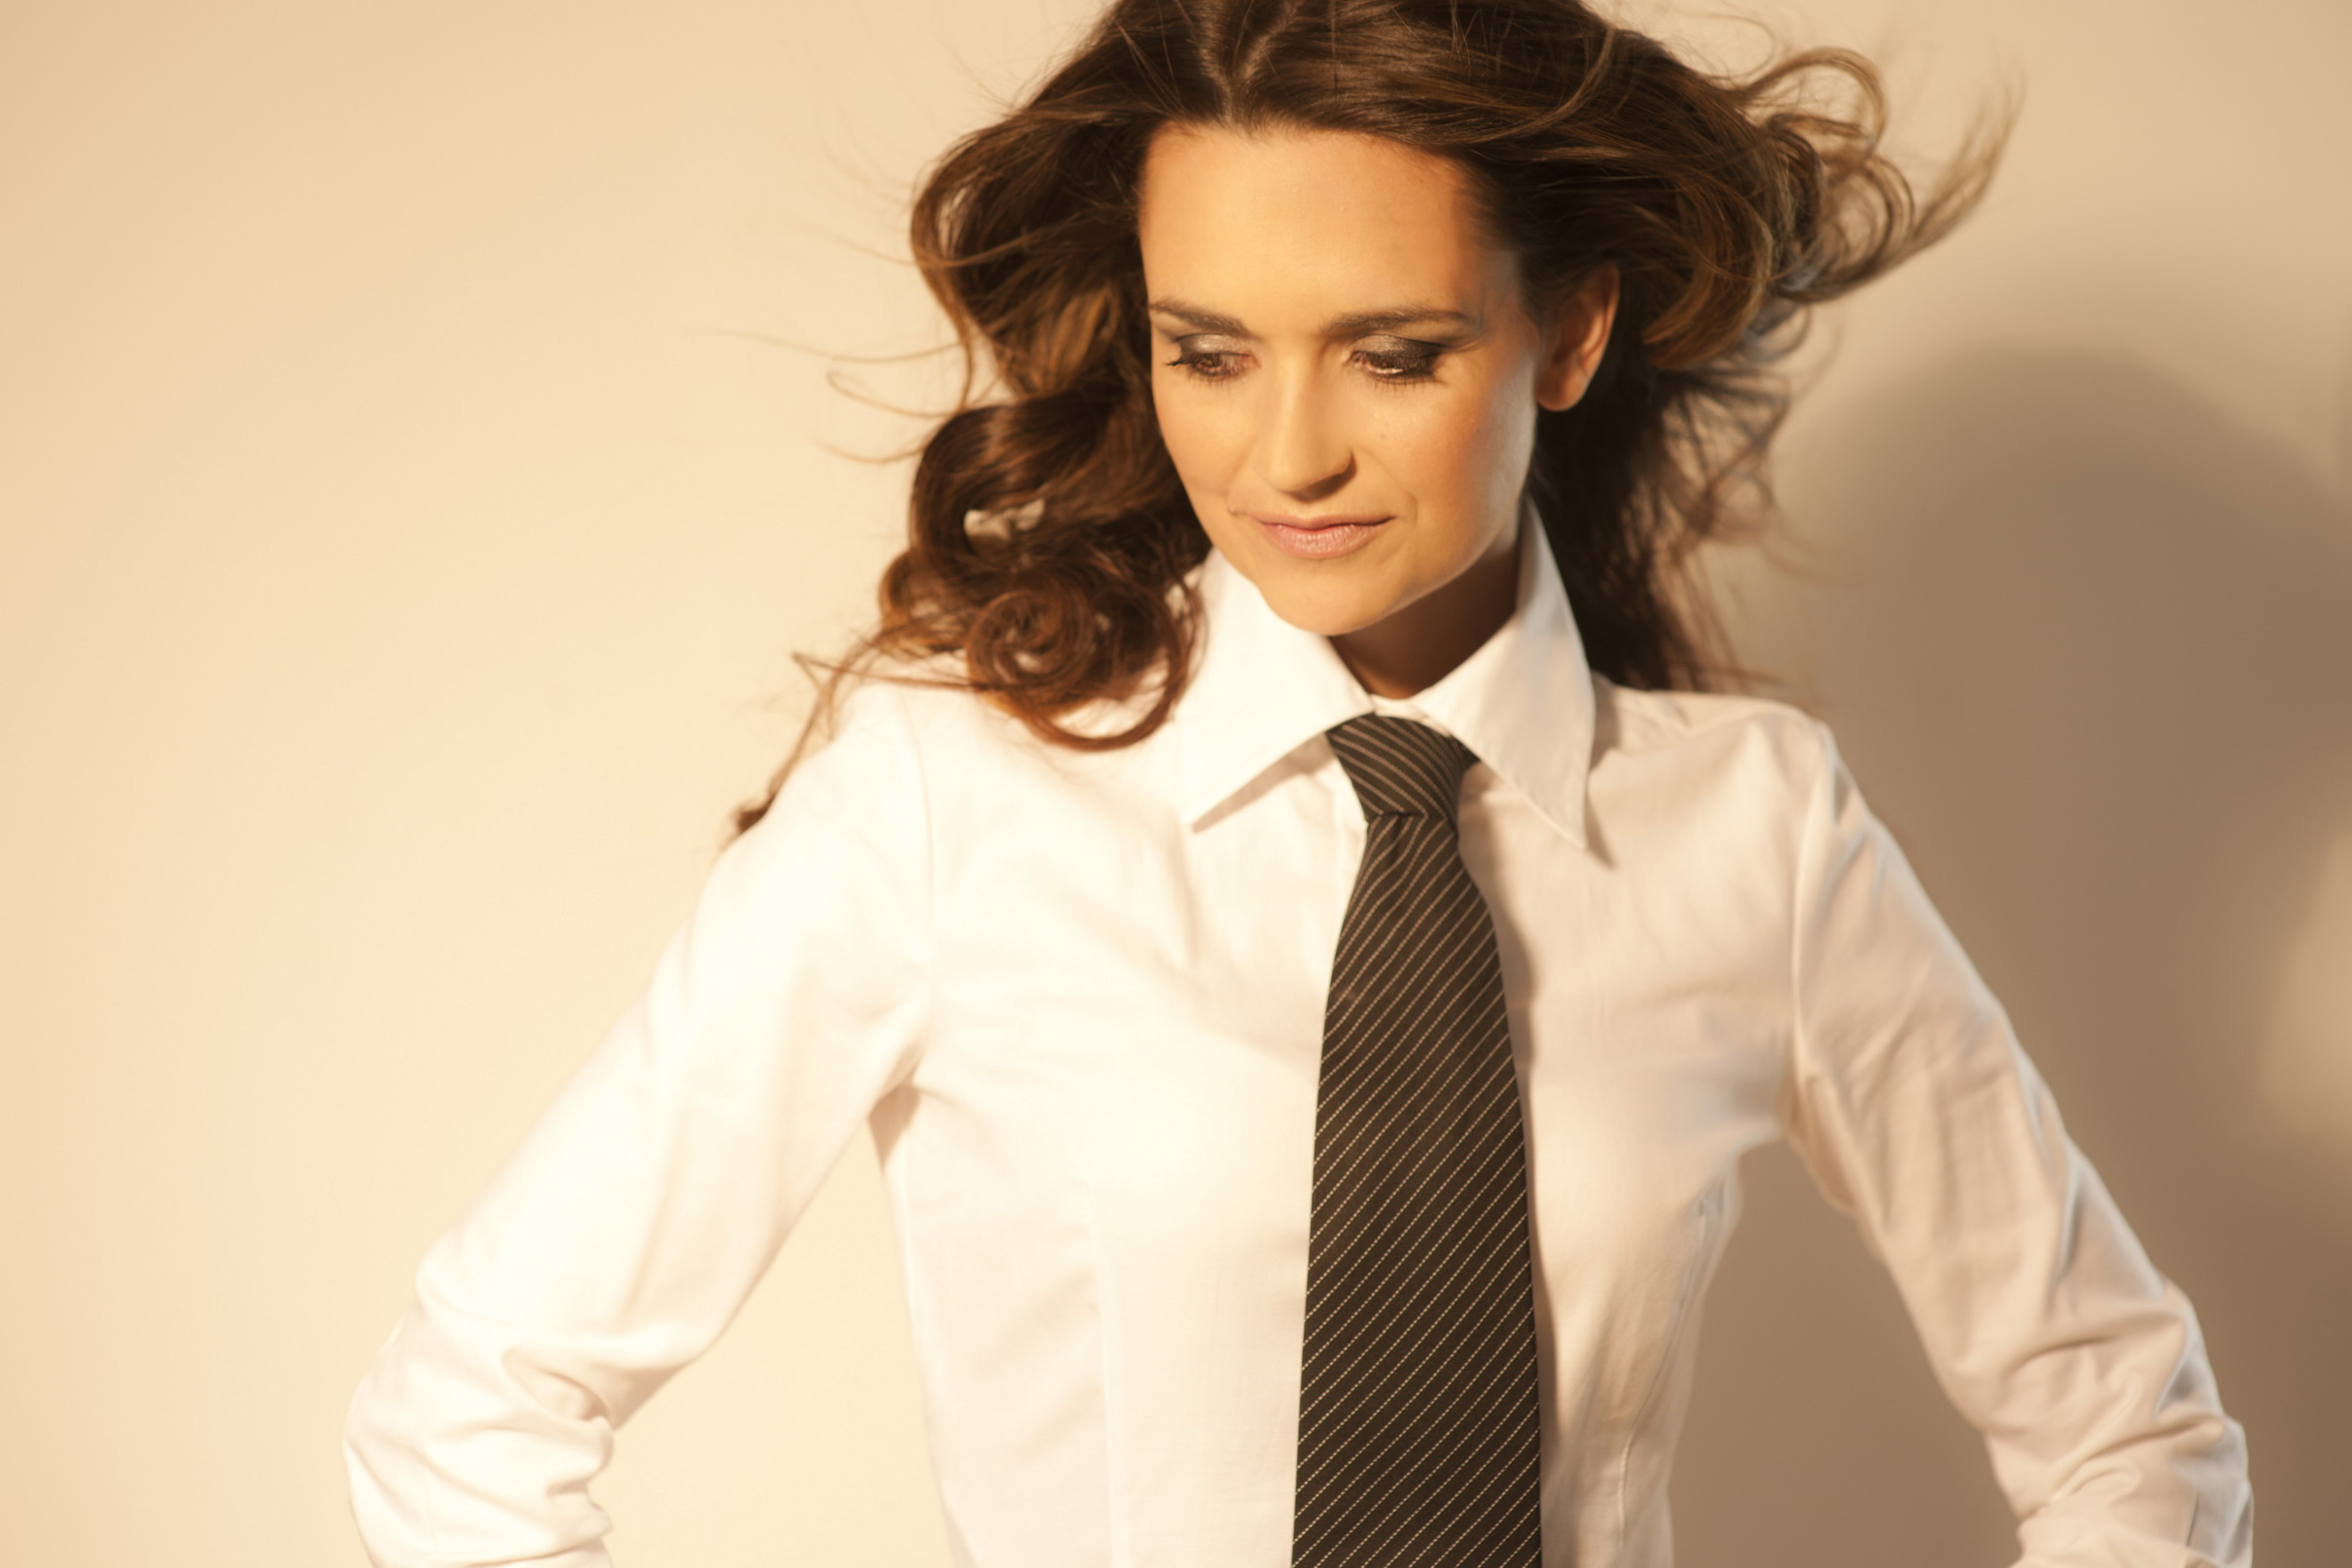 Рубашка с галстуком на женщине